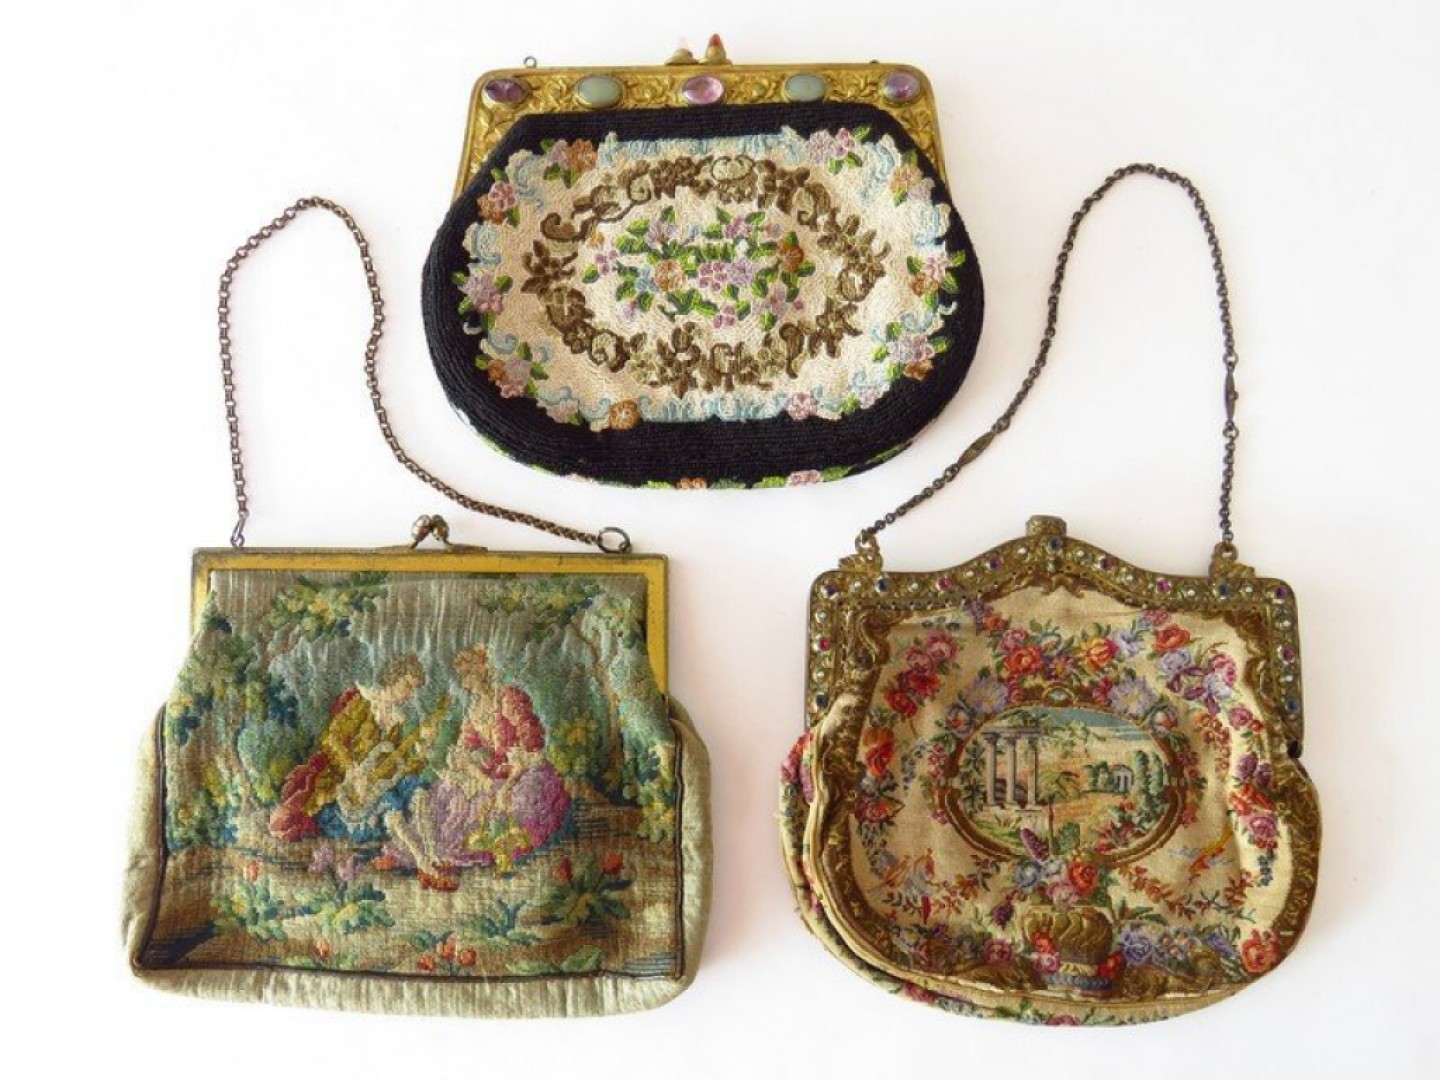 Aj kabelky majú svoju históriu. Ako sa menili?